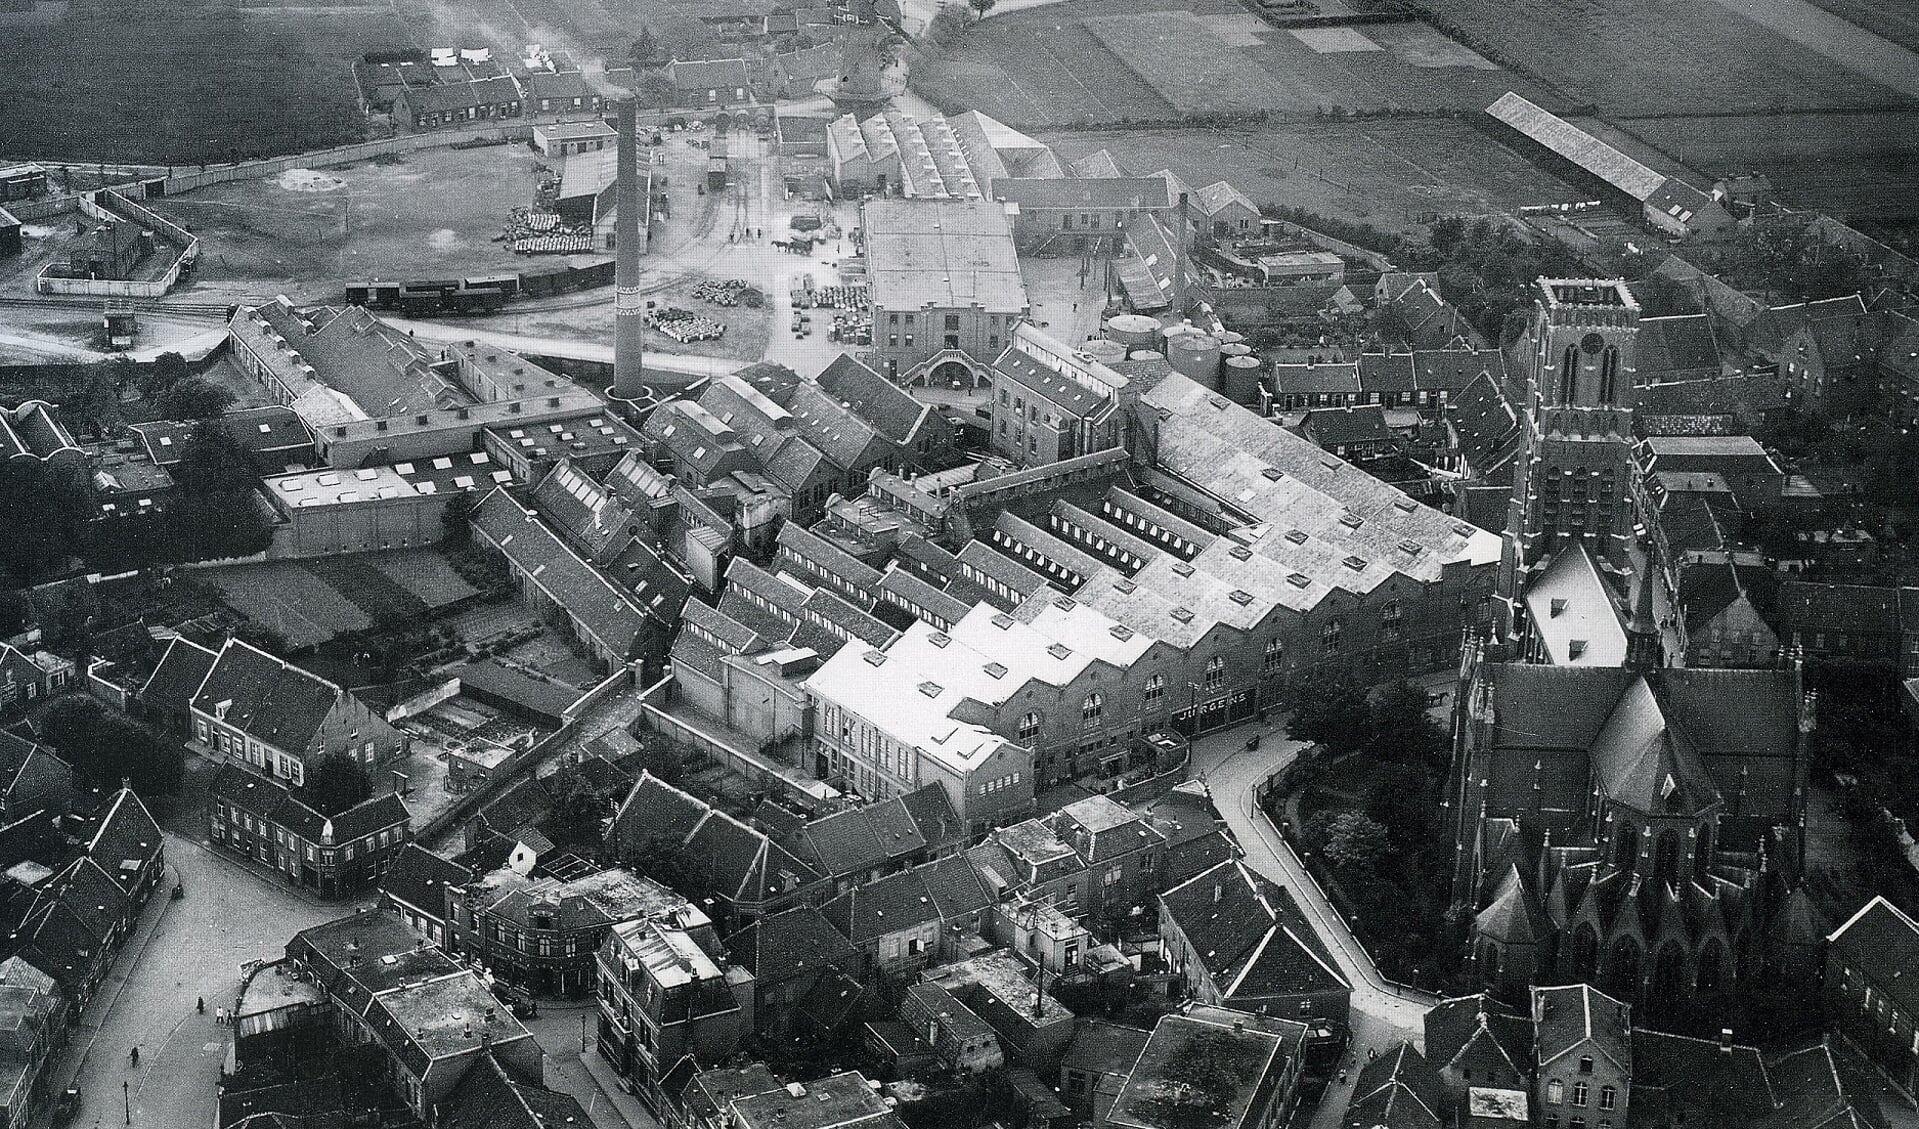 Luchtfoto met de fabrieksgebouwen van margarinefabrikant Jurgens. (Collectie Stadsarchief Oss)